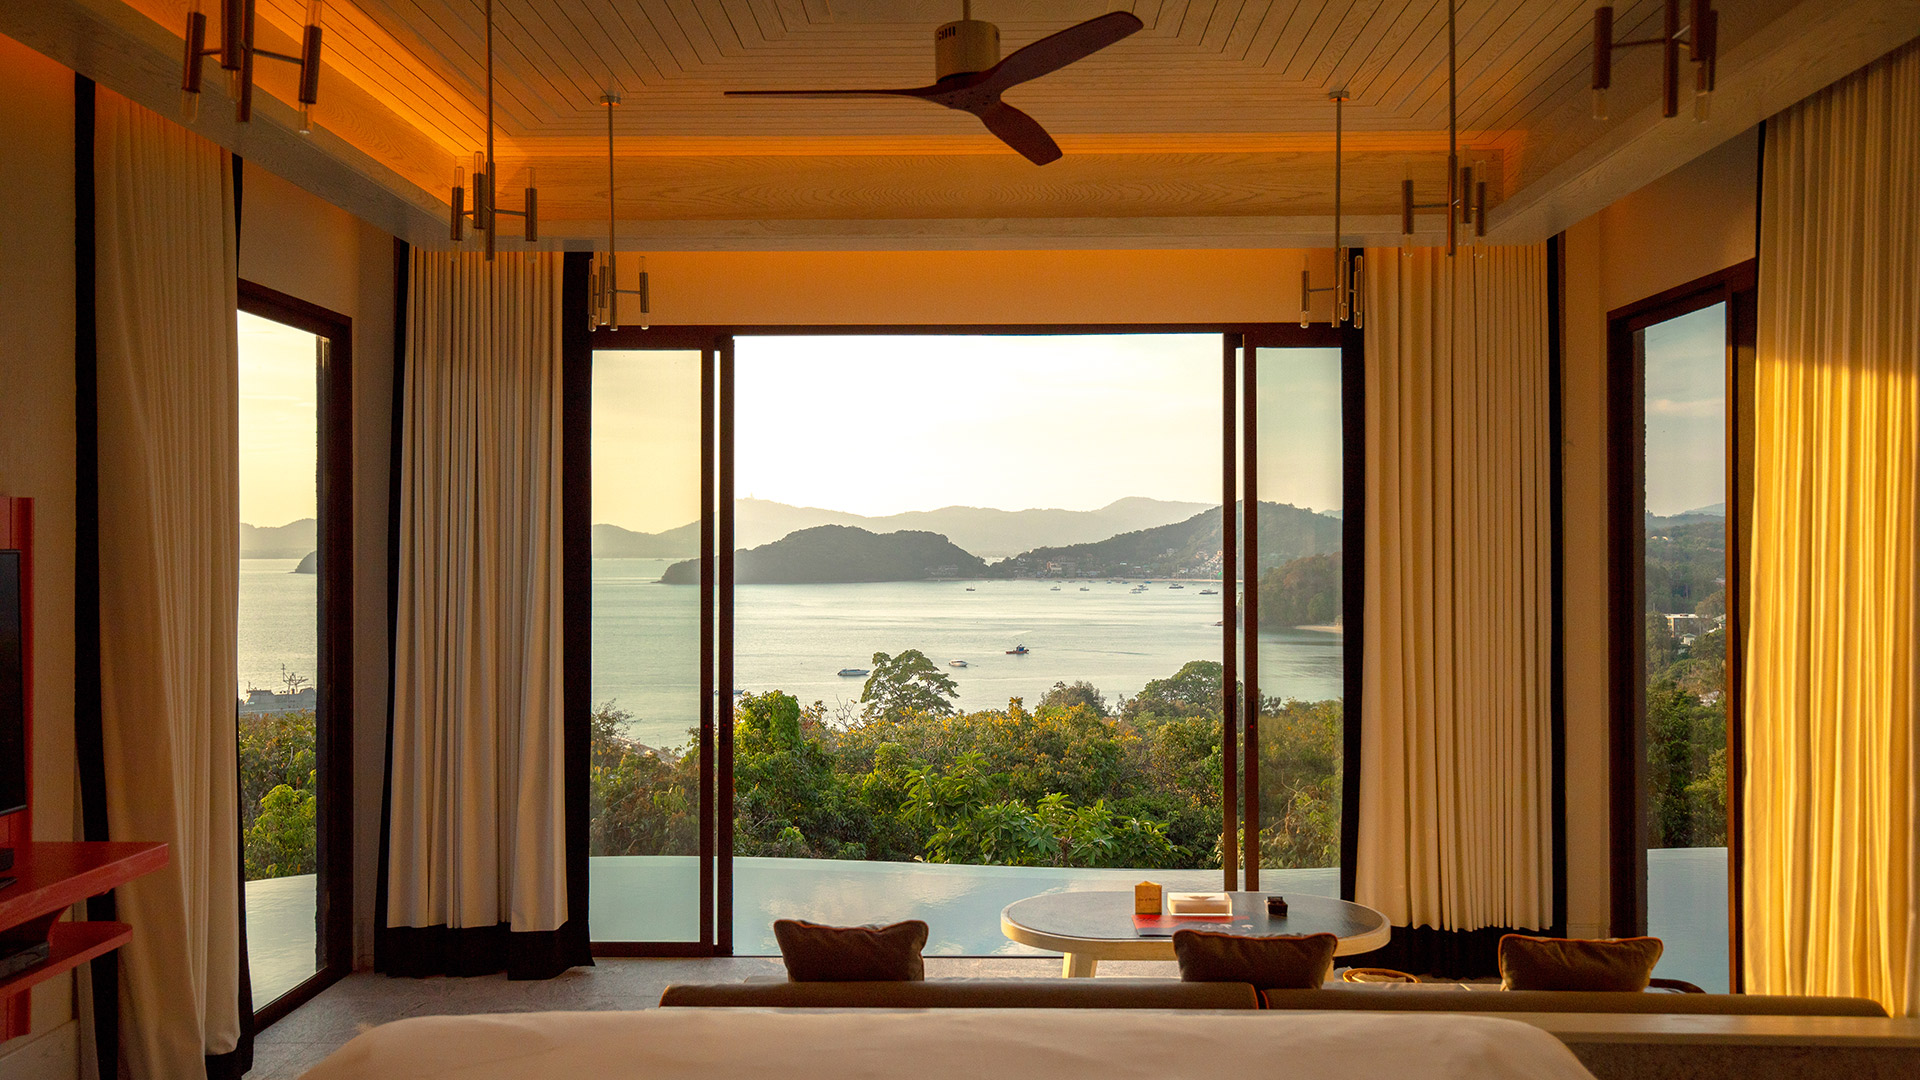 4br luxury residential pool villa phuket residence 6 star hotel